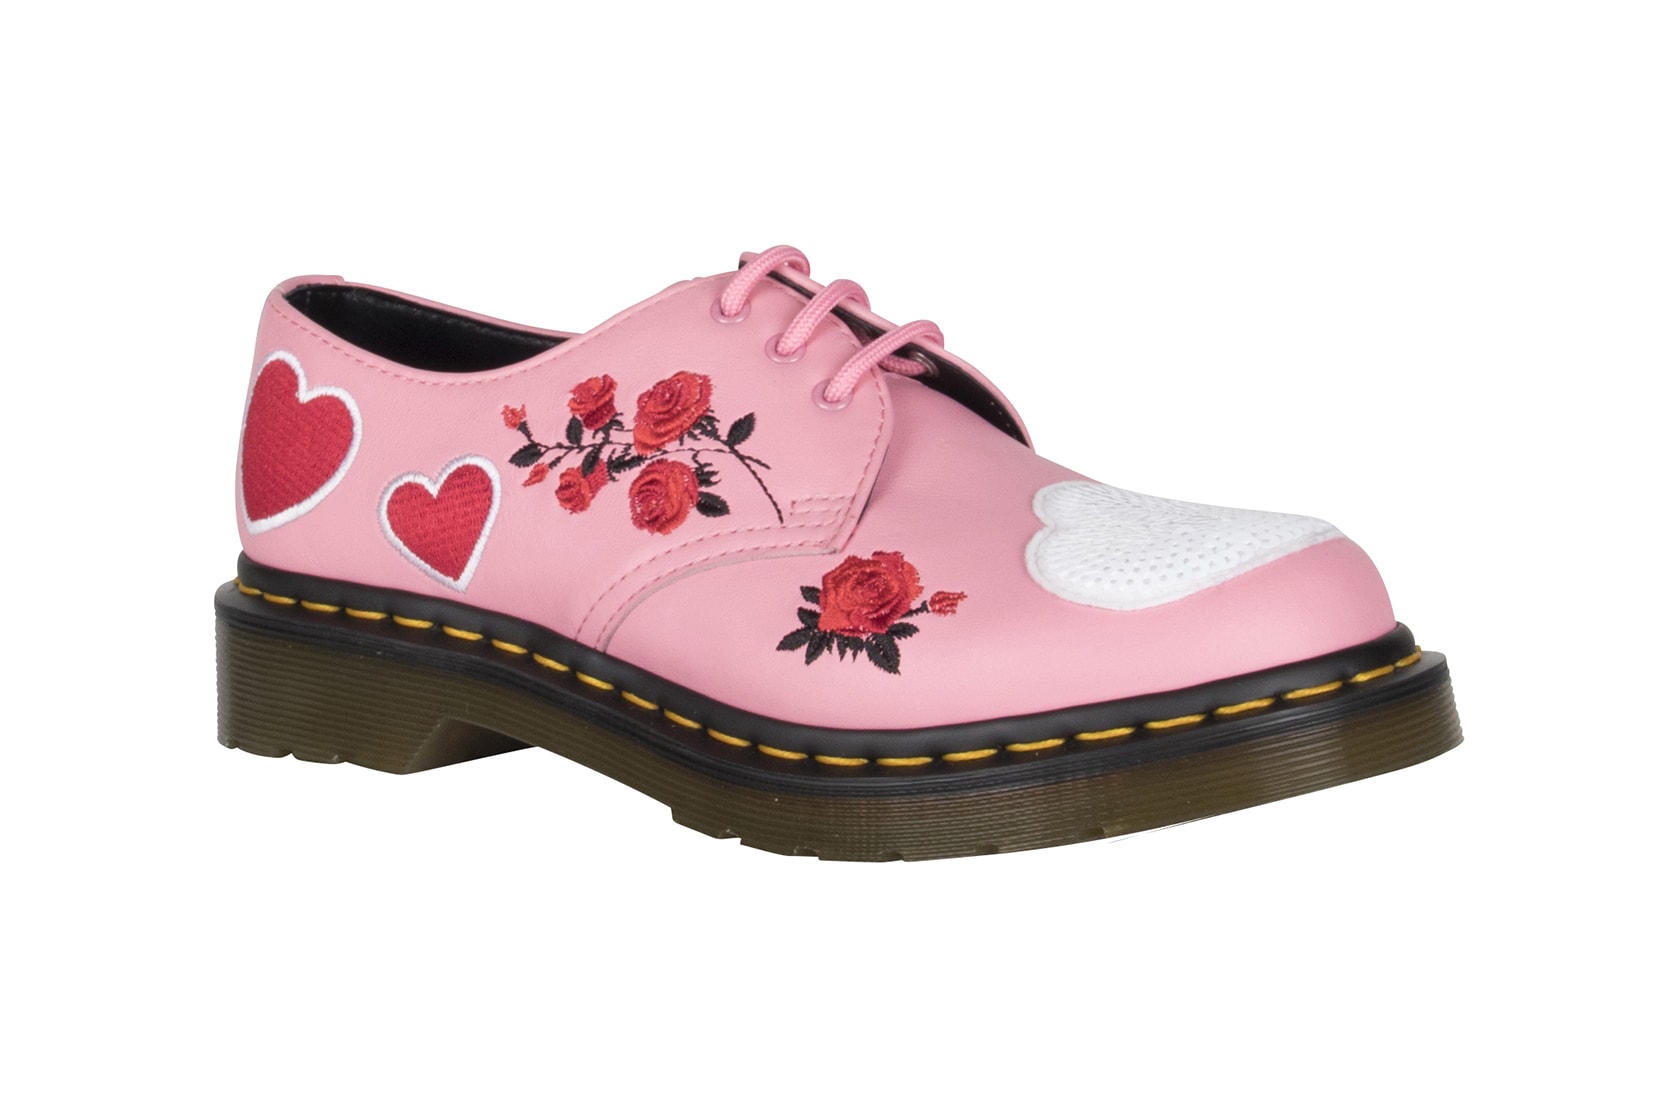 Dr. Martens Valentine's Day Rebel Heart Boots Shoes Satchel Bag Pink Black 